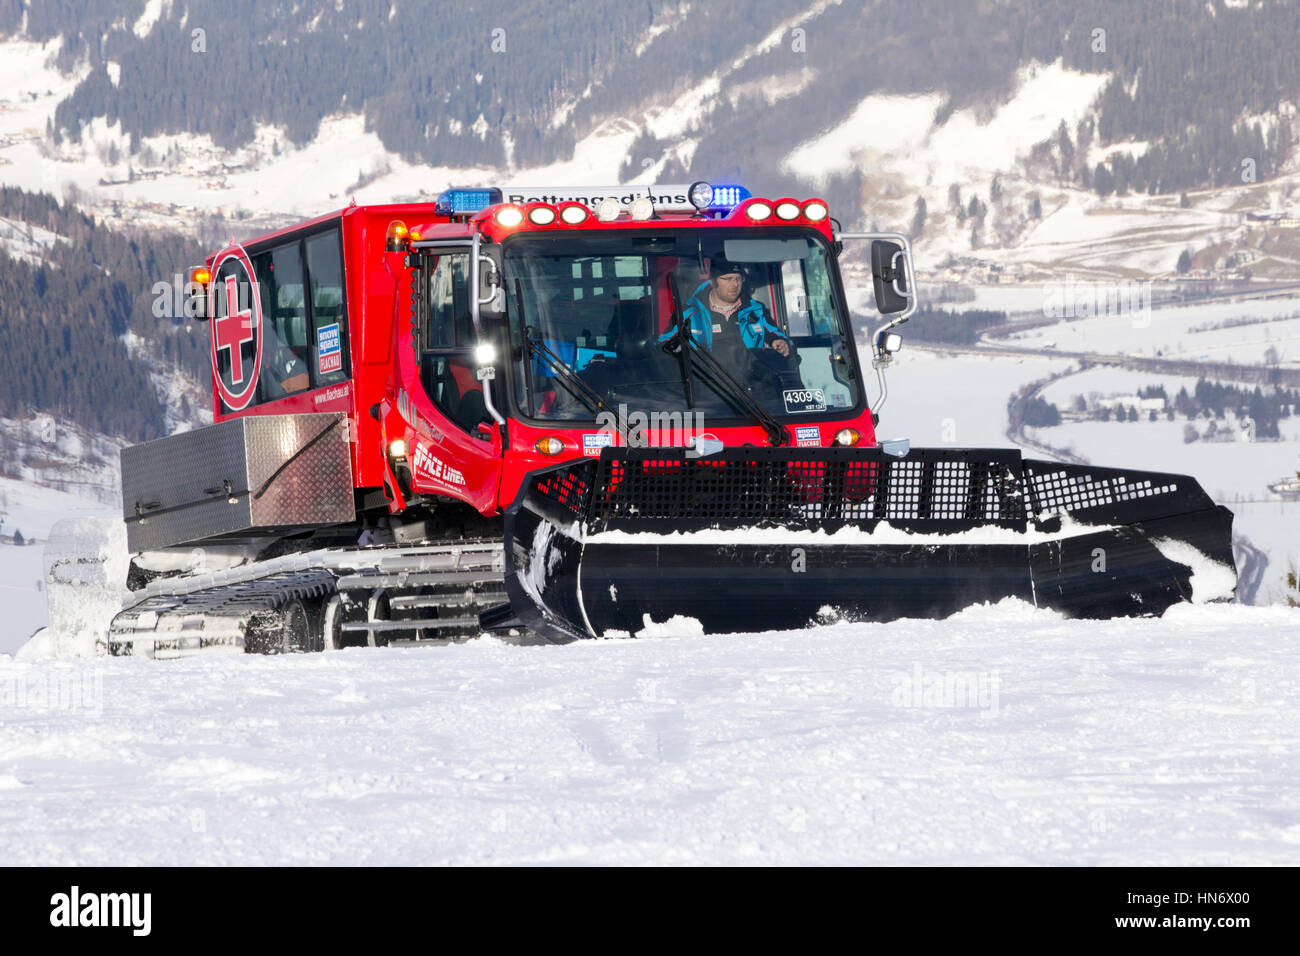 FLACHAU, AUTRICHE - DEC 29 : snowgroomer sur la piste de ski dans la station de ski de Flachau, Autriche le Déc 29, 2012. Ces pistes sont une partie de la station de ski Banque D'Images